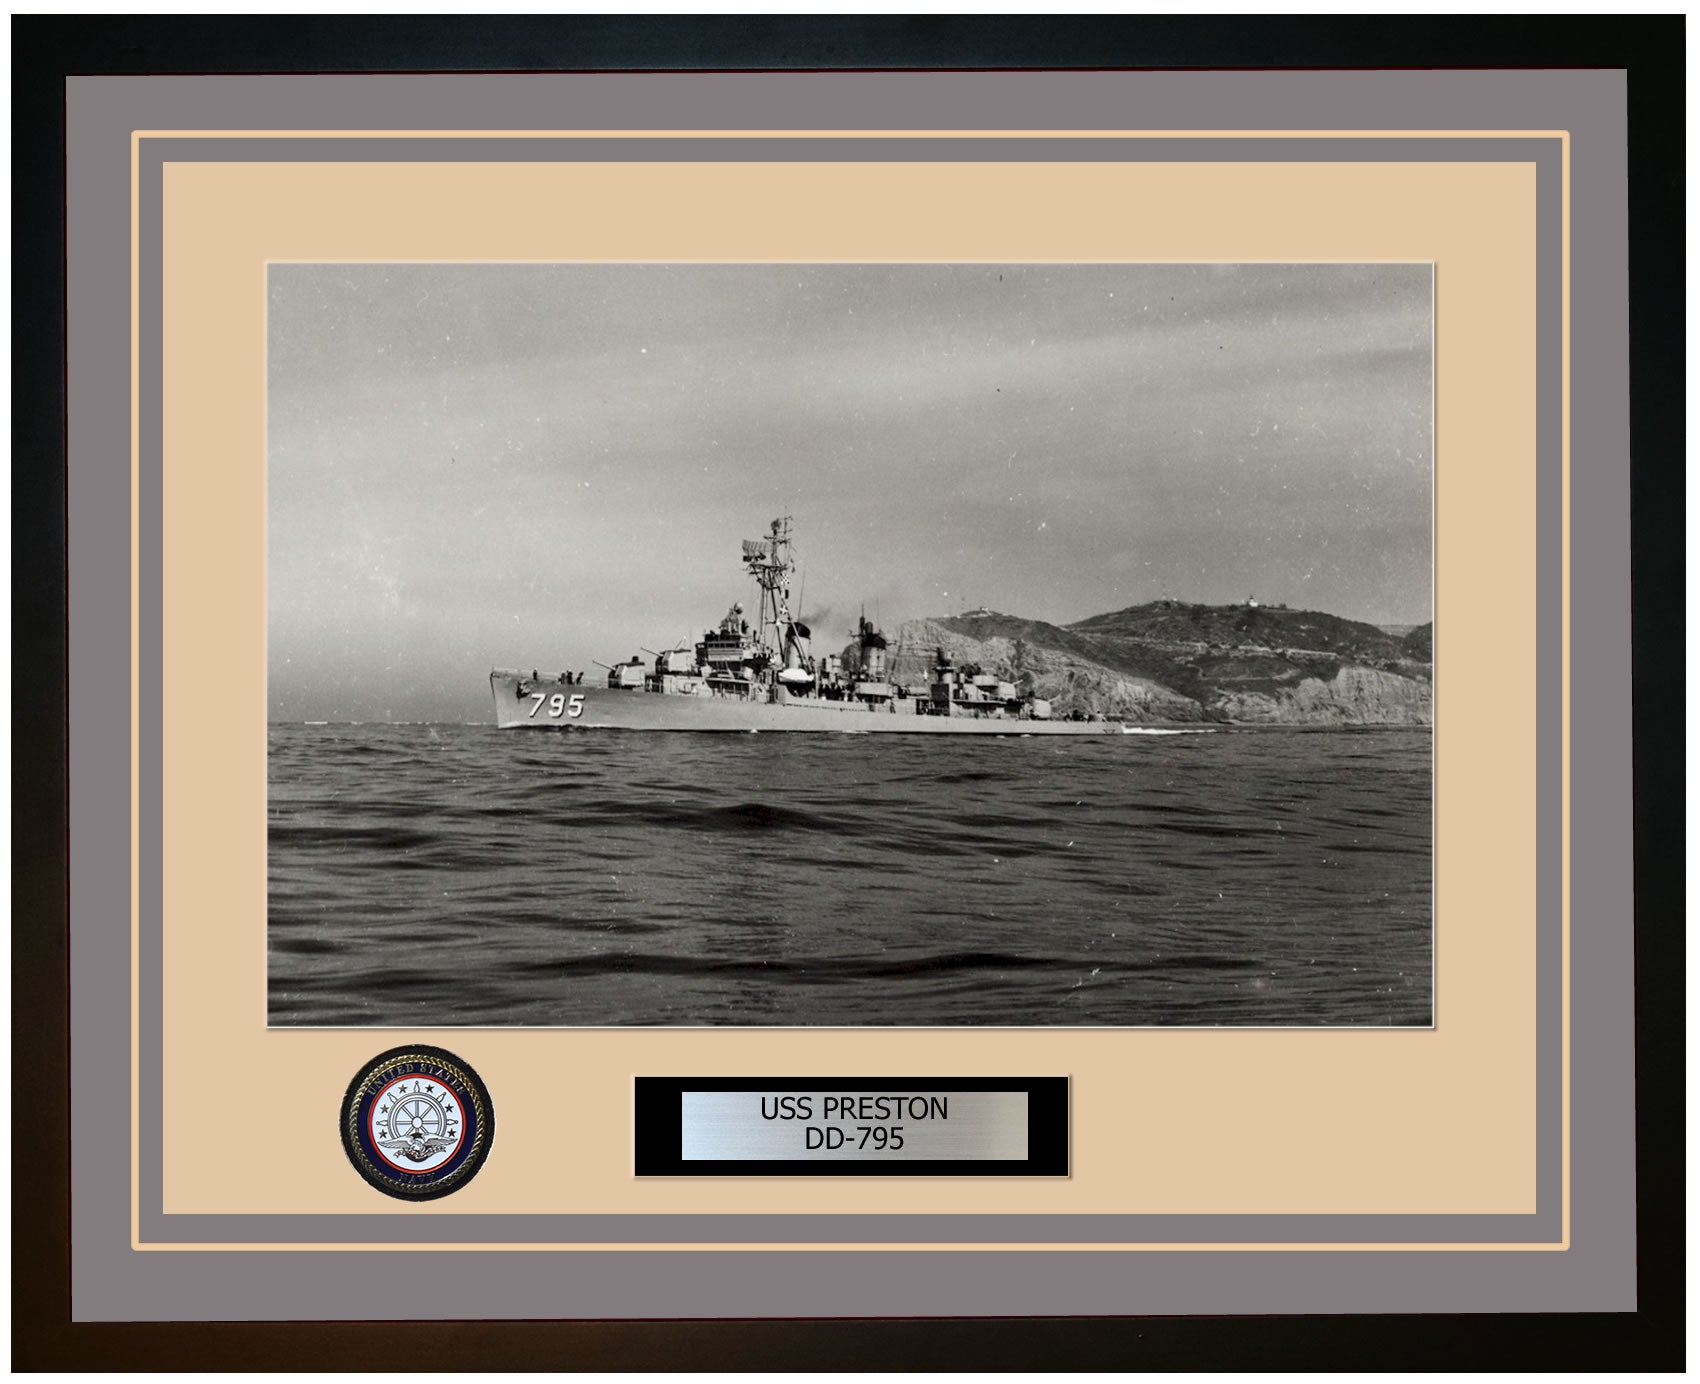 USS PRESTON DD-795 Framed Navy Ship Photo Grey